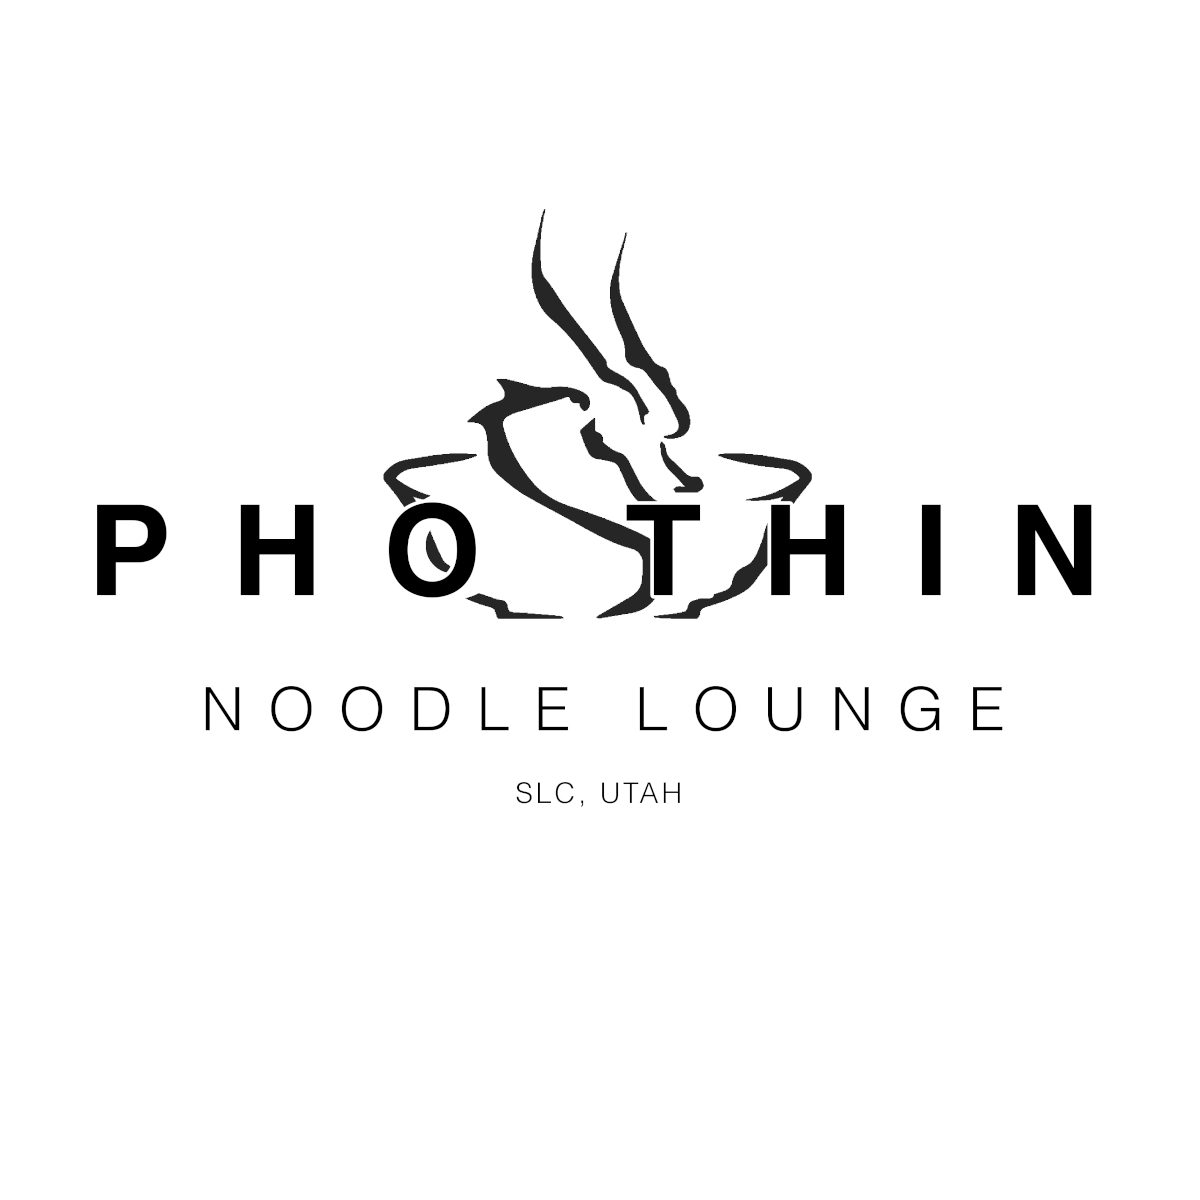 Pho Thin noodle lounge logo